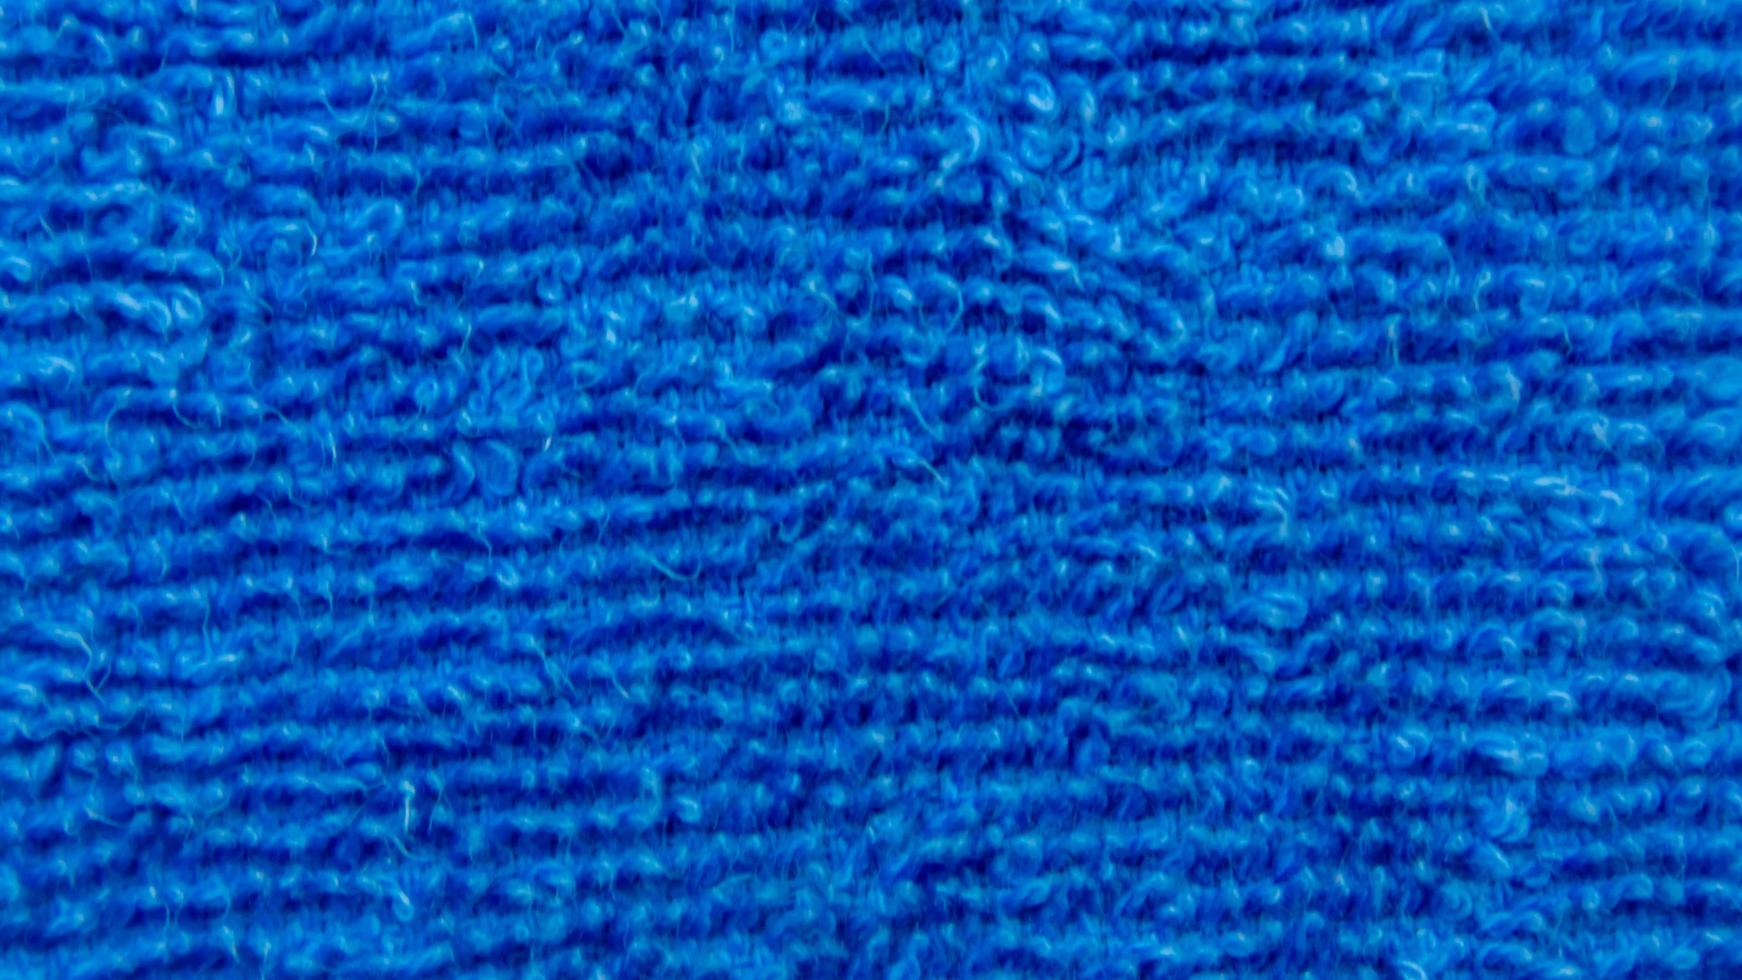 blå handduk textur som en bakgrund foto